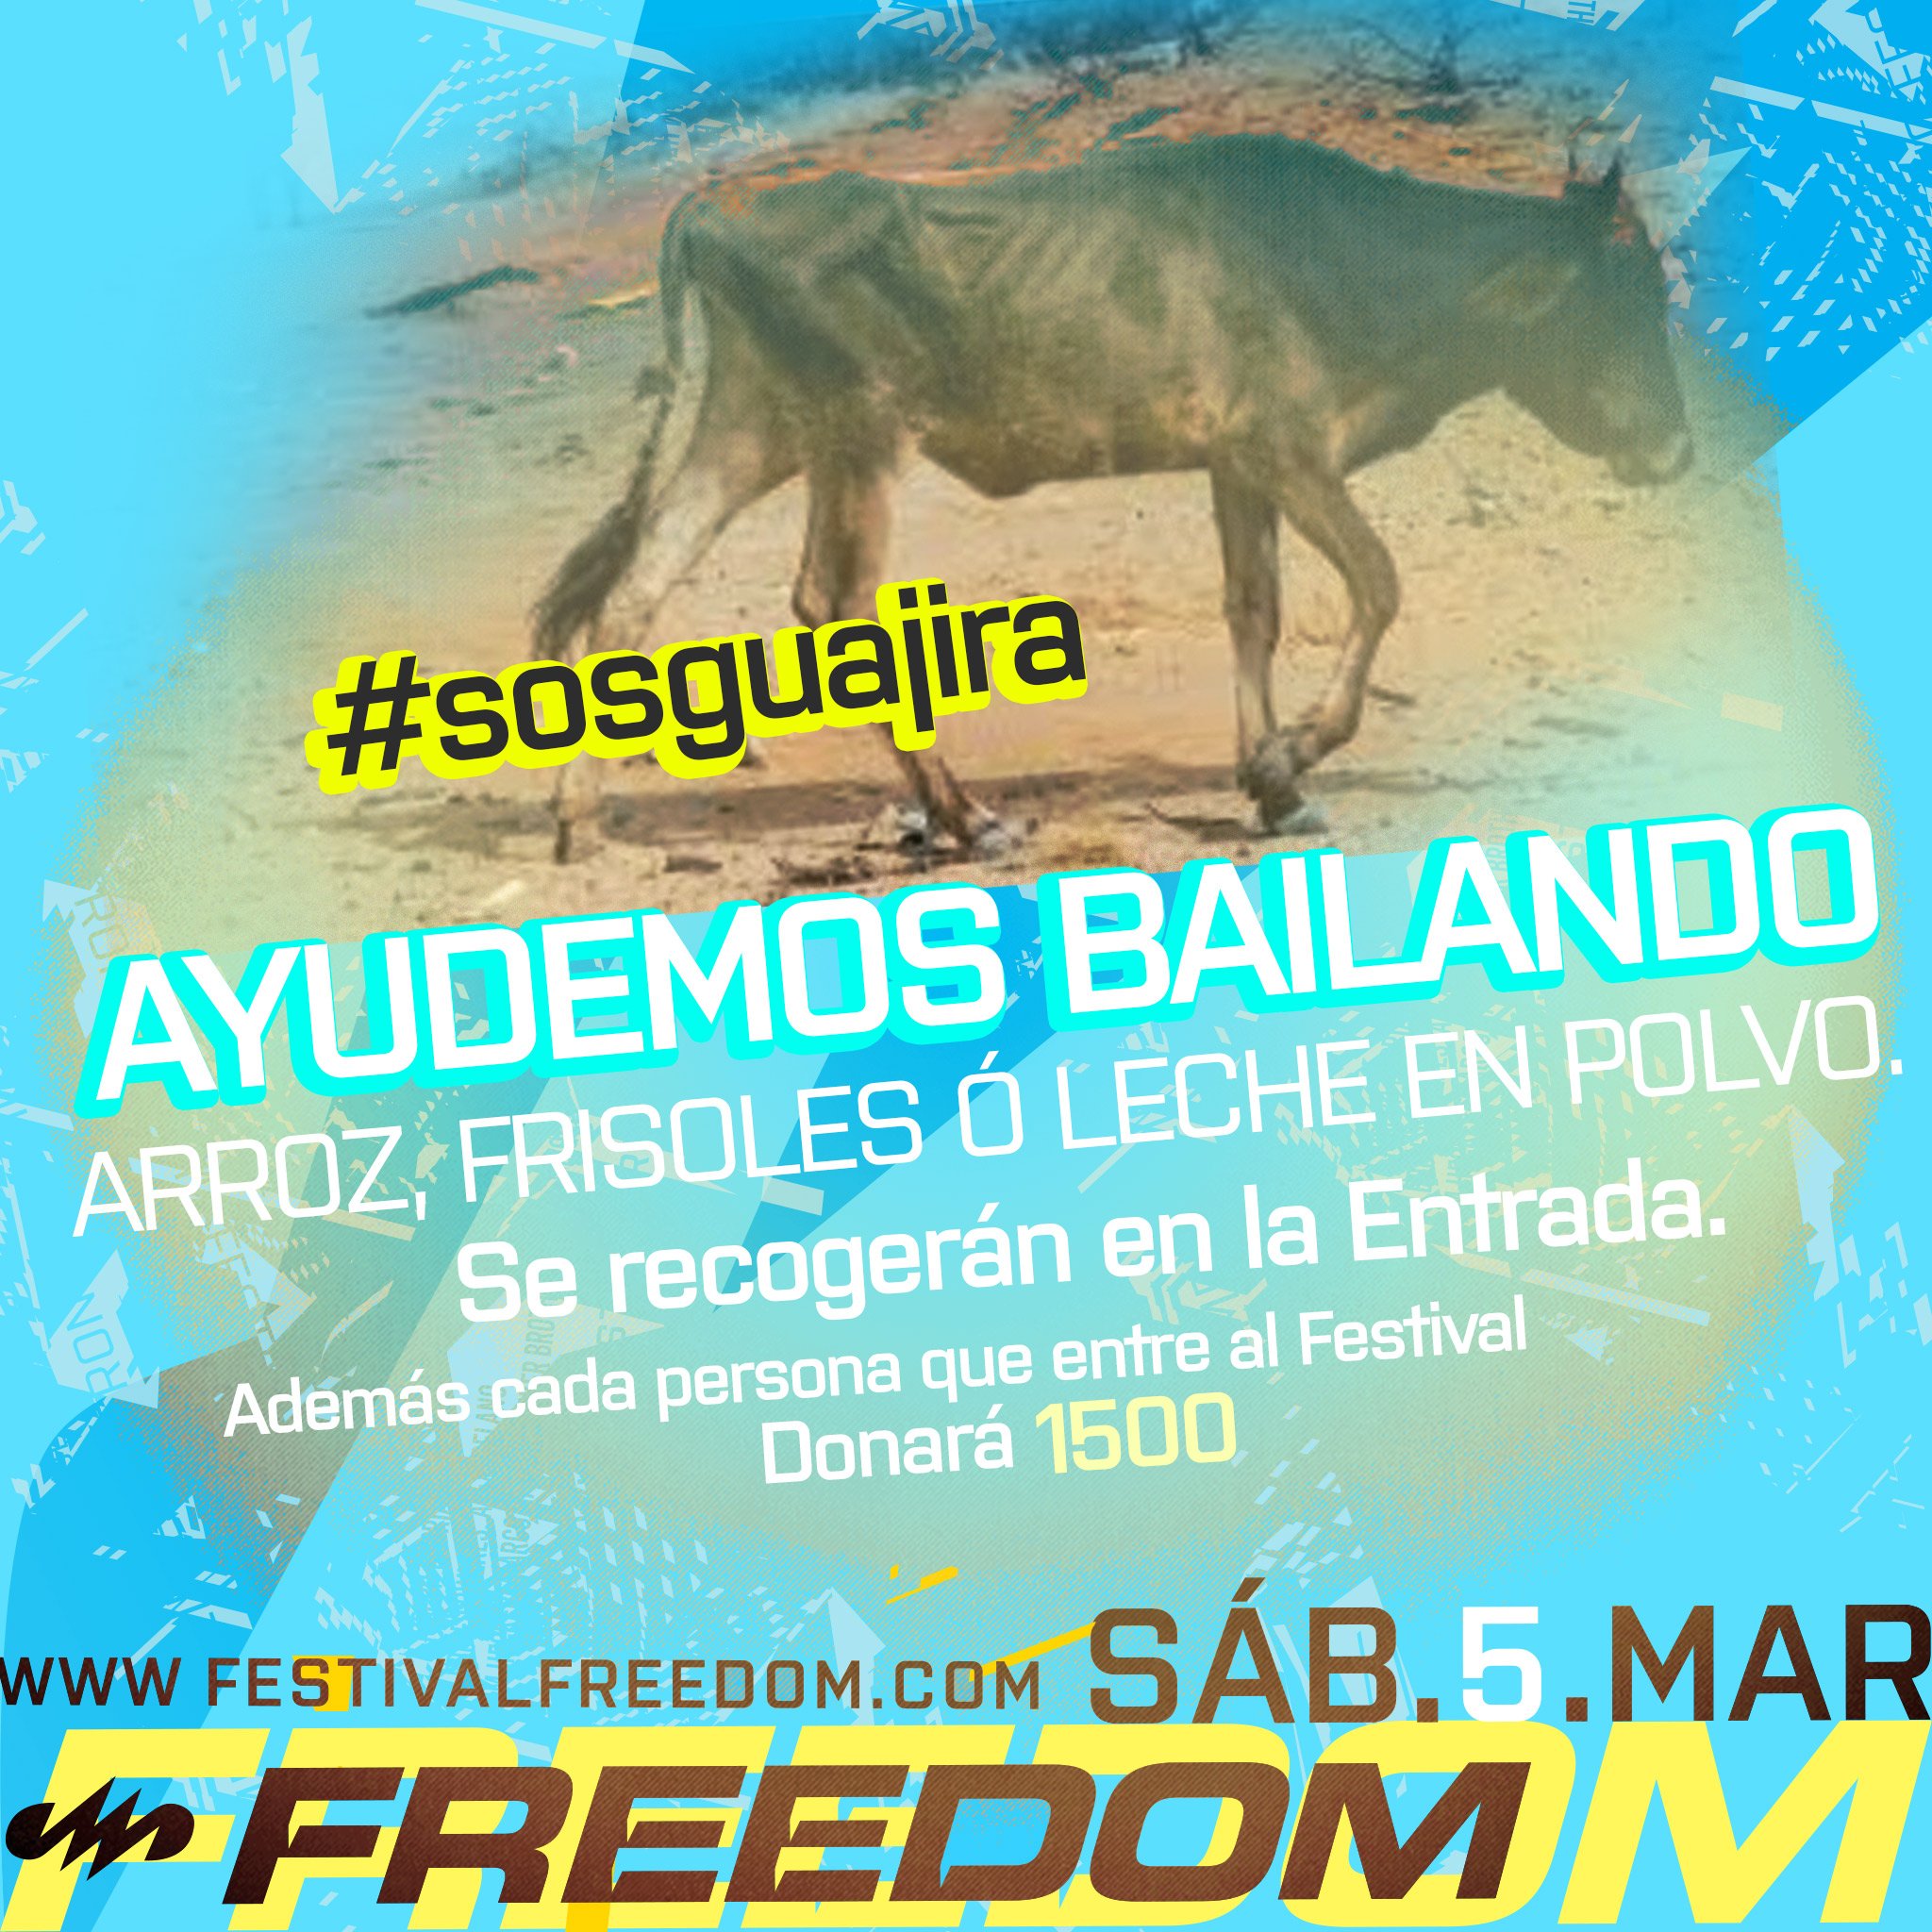 OJO se recogerán alimentos para La Guajira éste Sábado en el #FREEDOMMEDELLIN